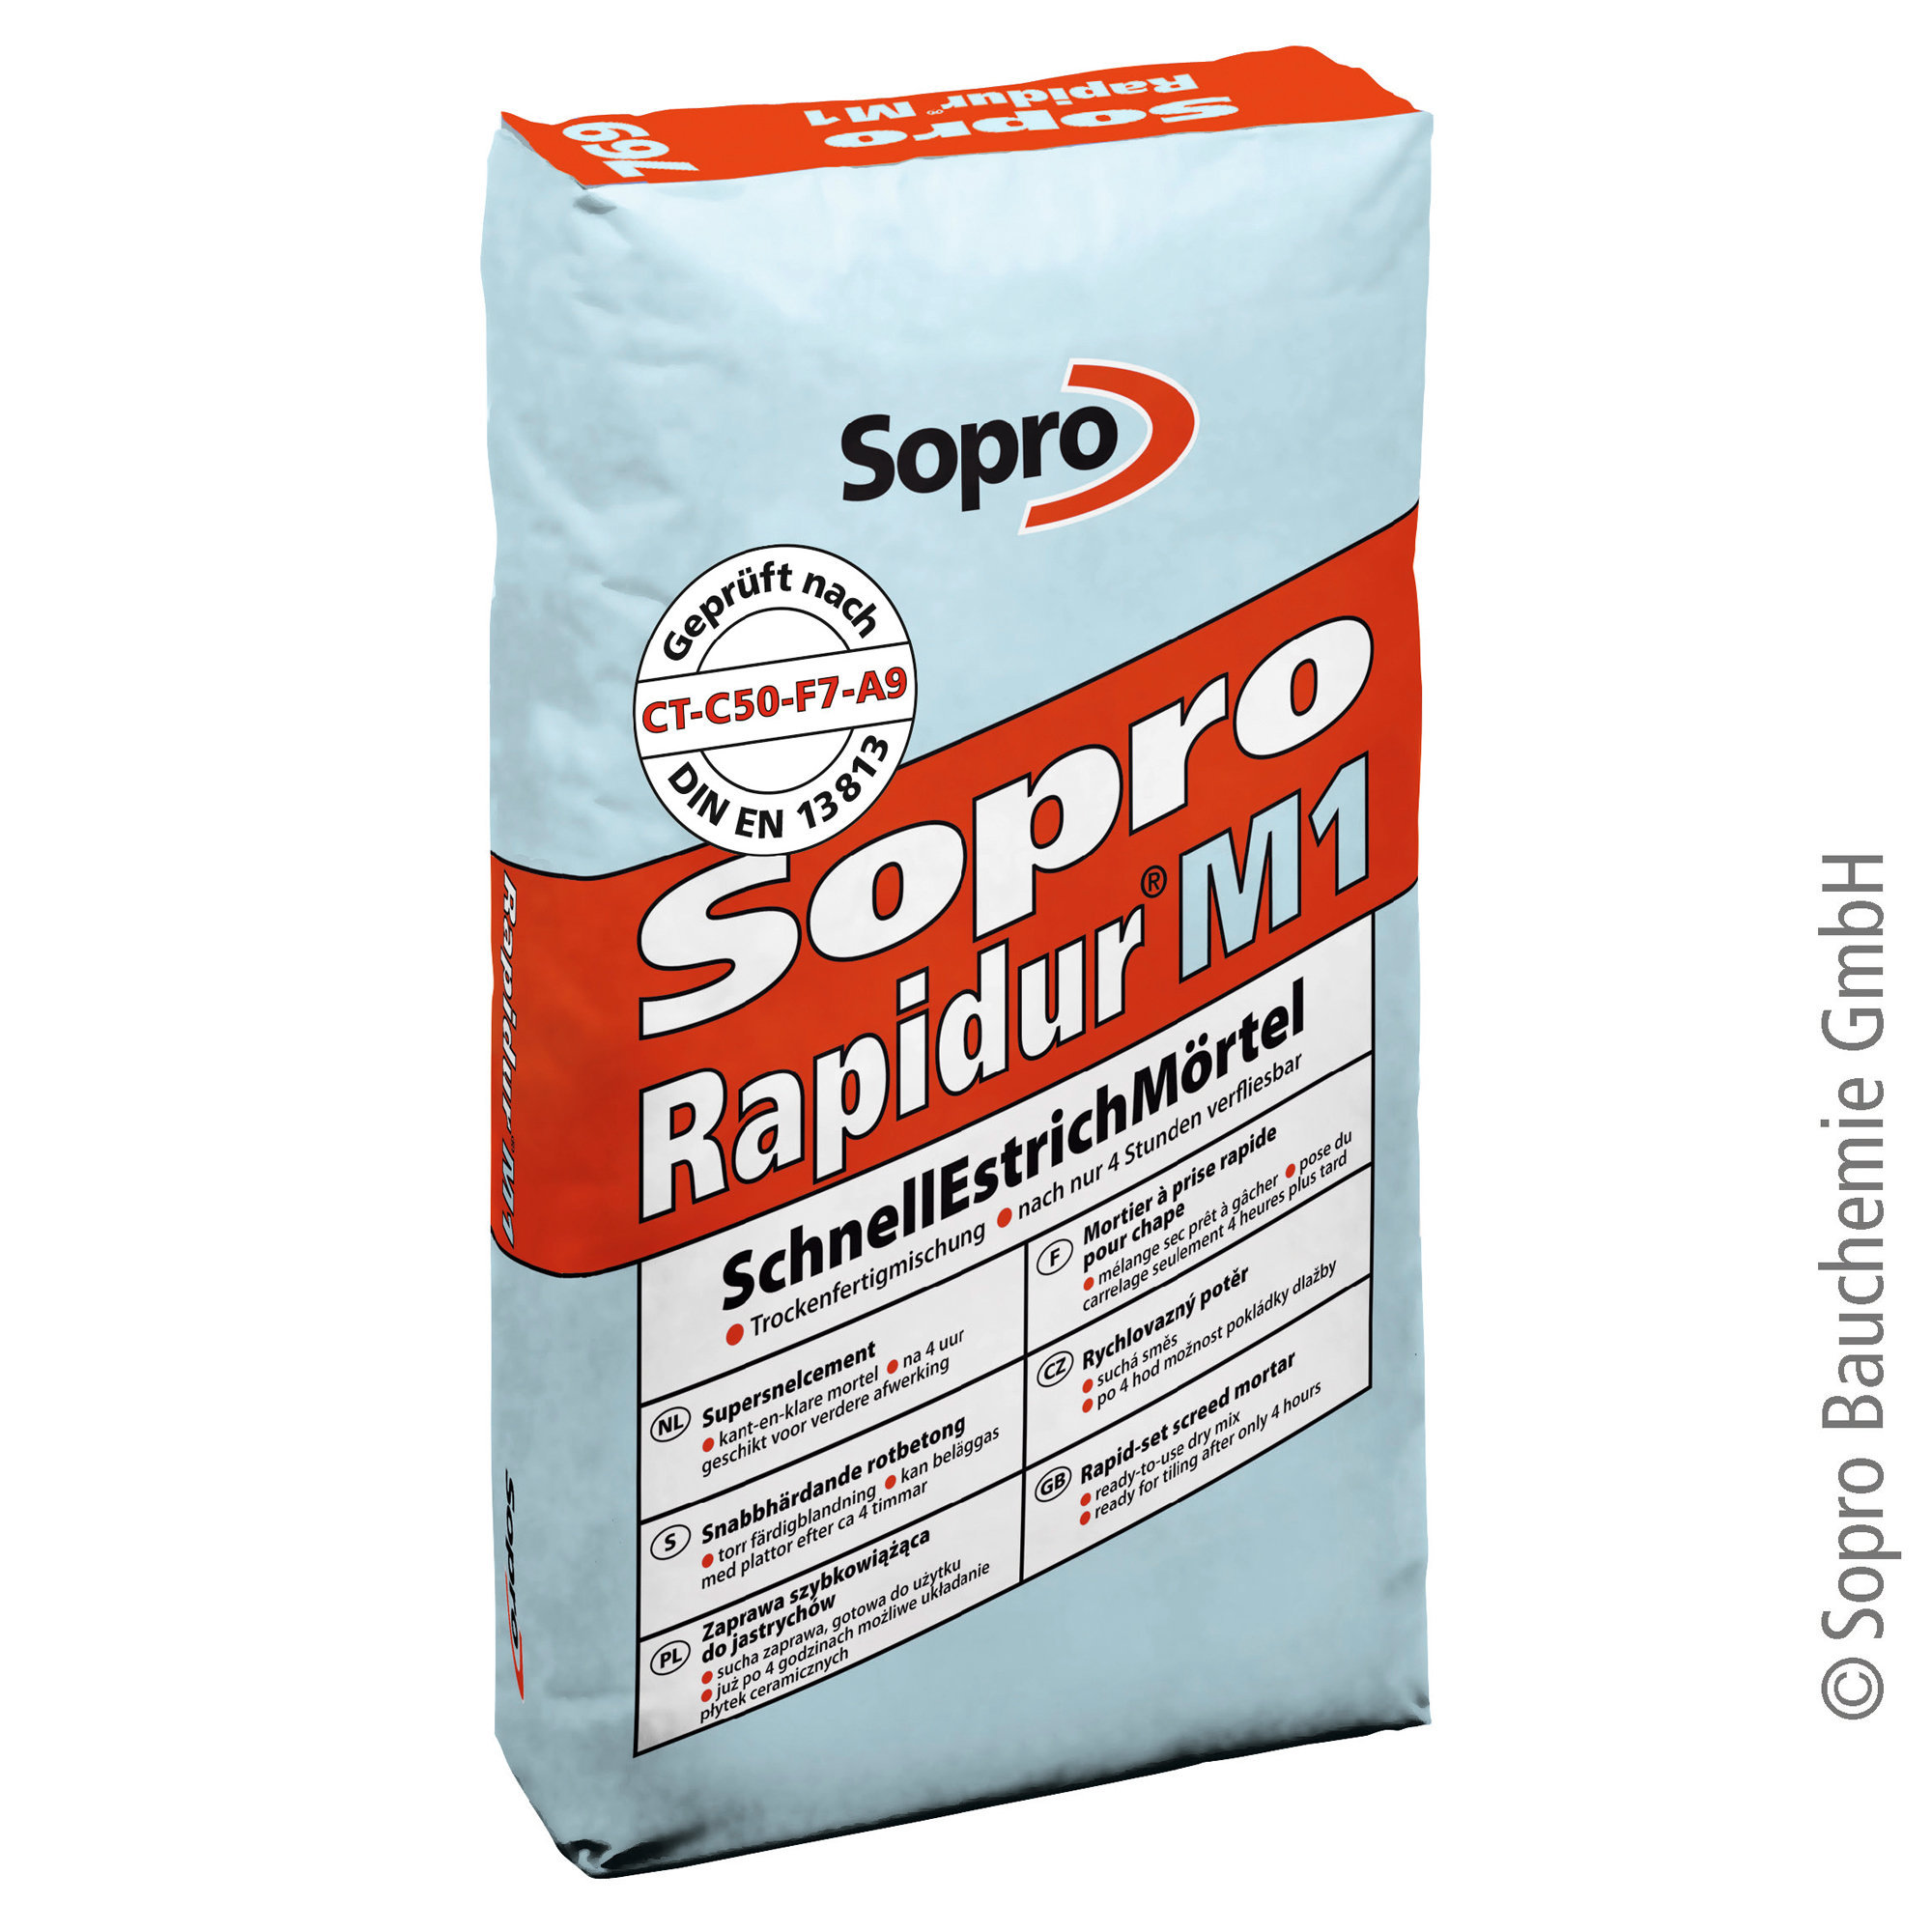 Sopro Rapidur M1 SEM 769